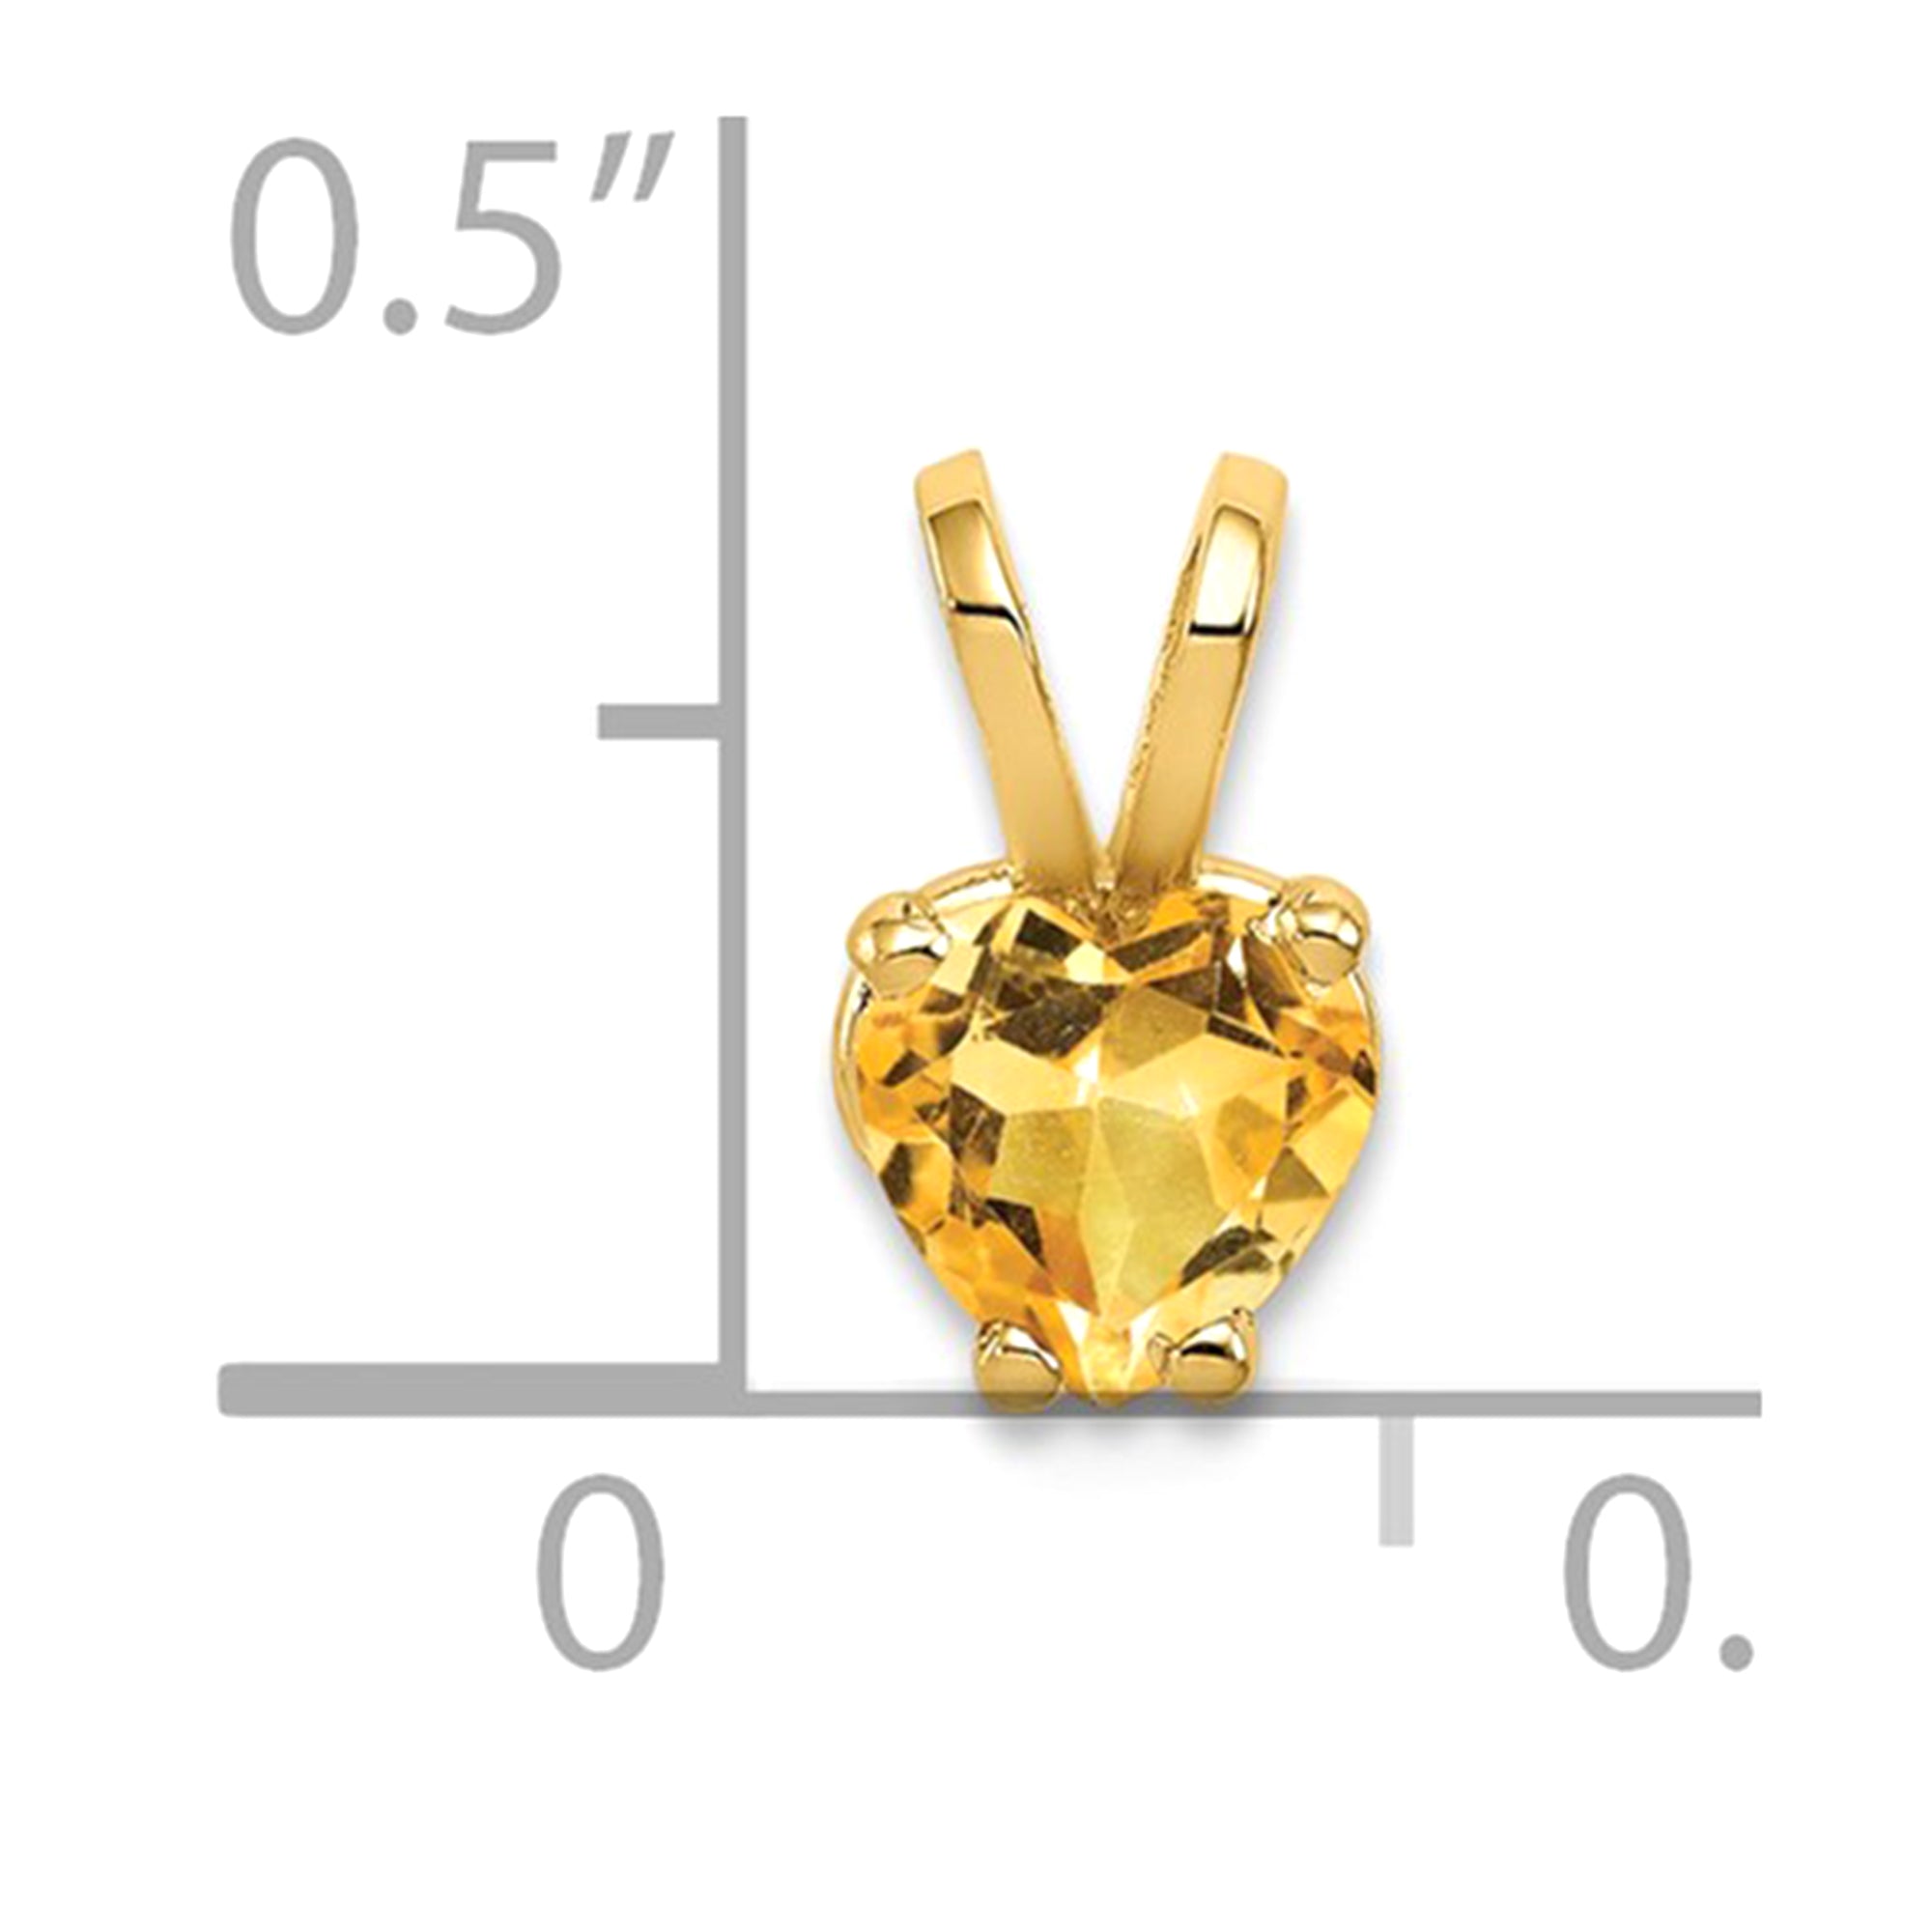 Colgante con piedra natal de corazón de oro amarillo real de 14 quilates, joyería fina de diseño para hombres y mujeres